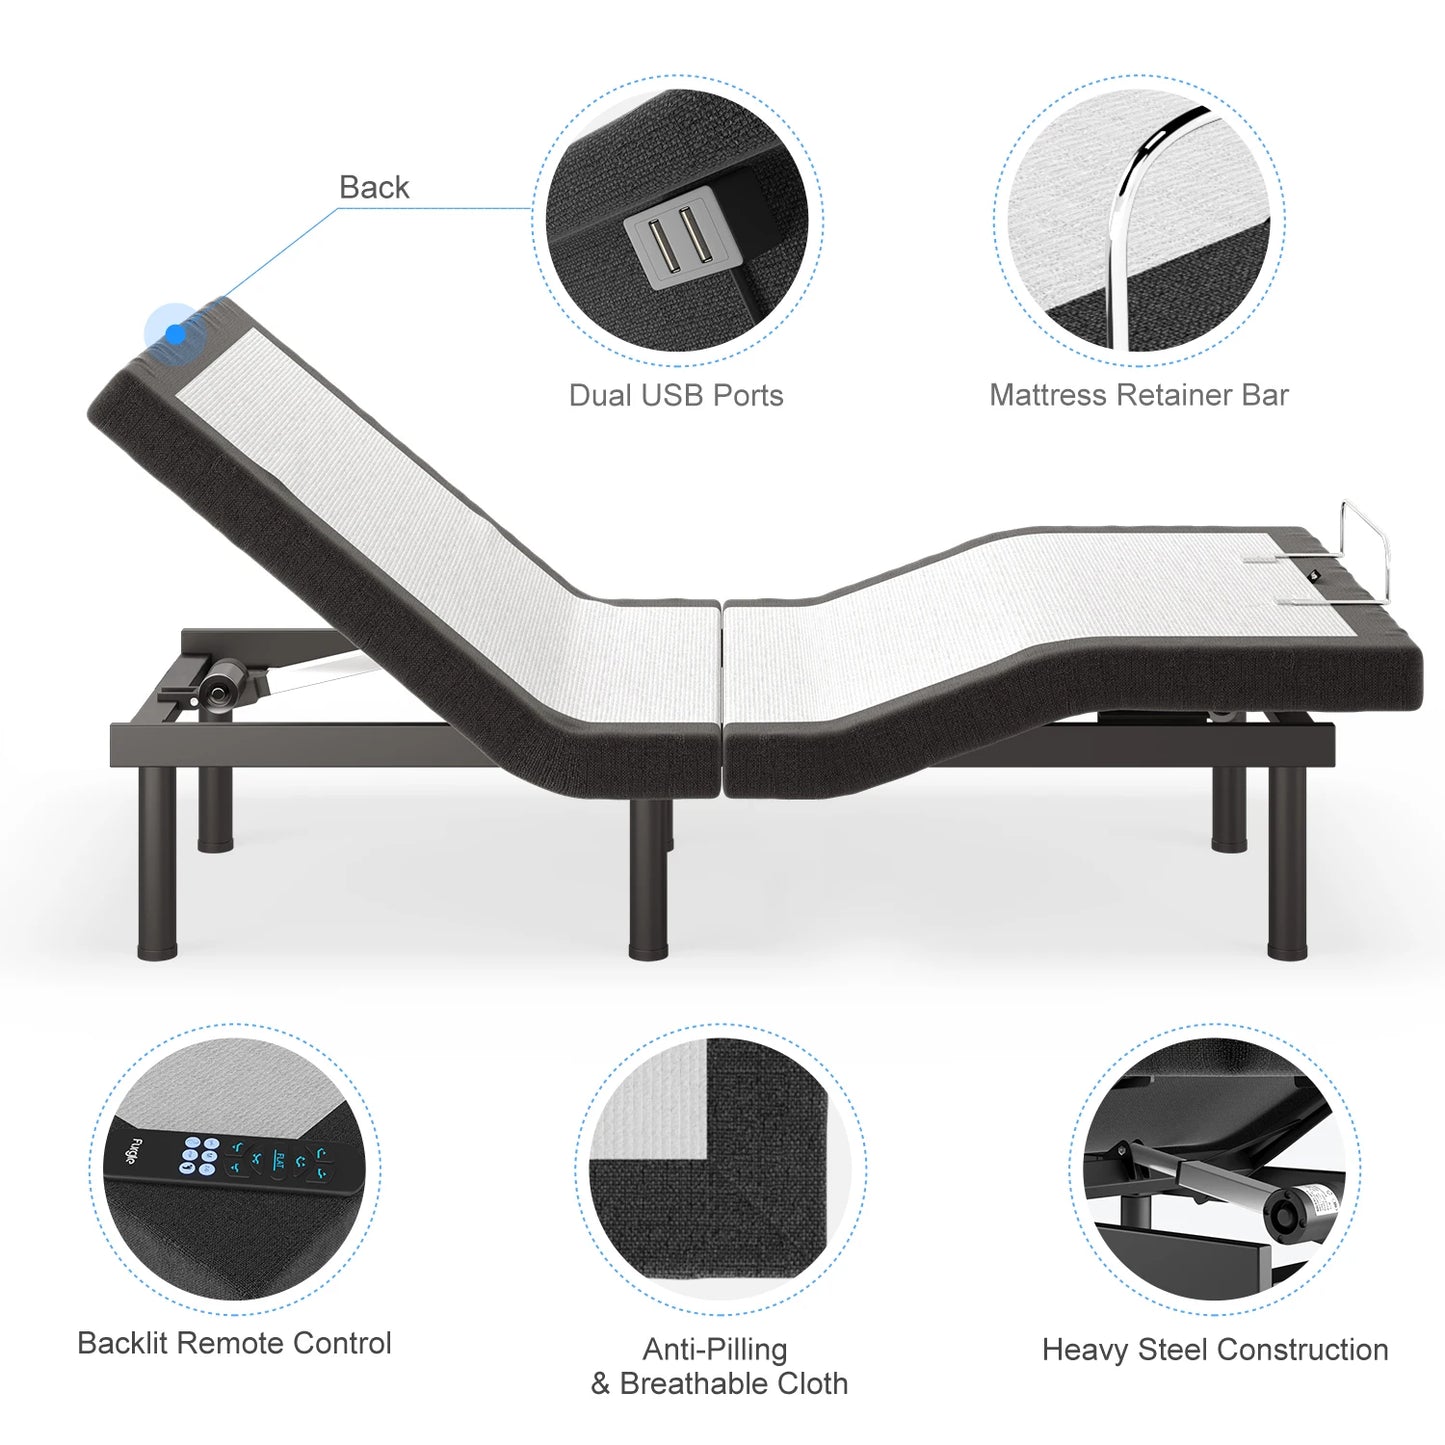 XL Size Bed Base Frame for Stress Management